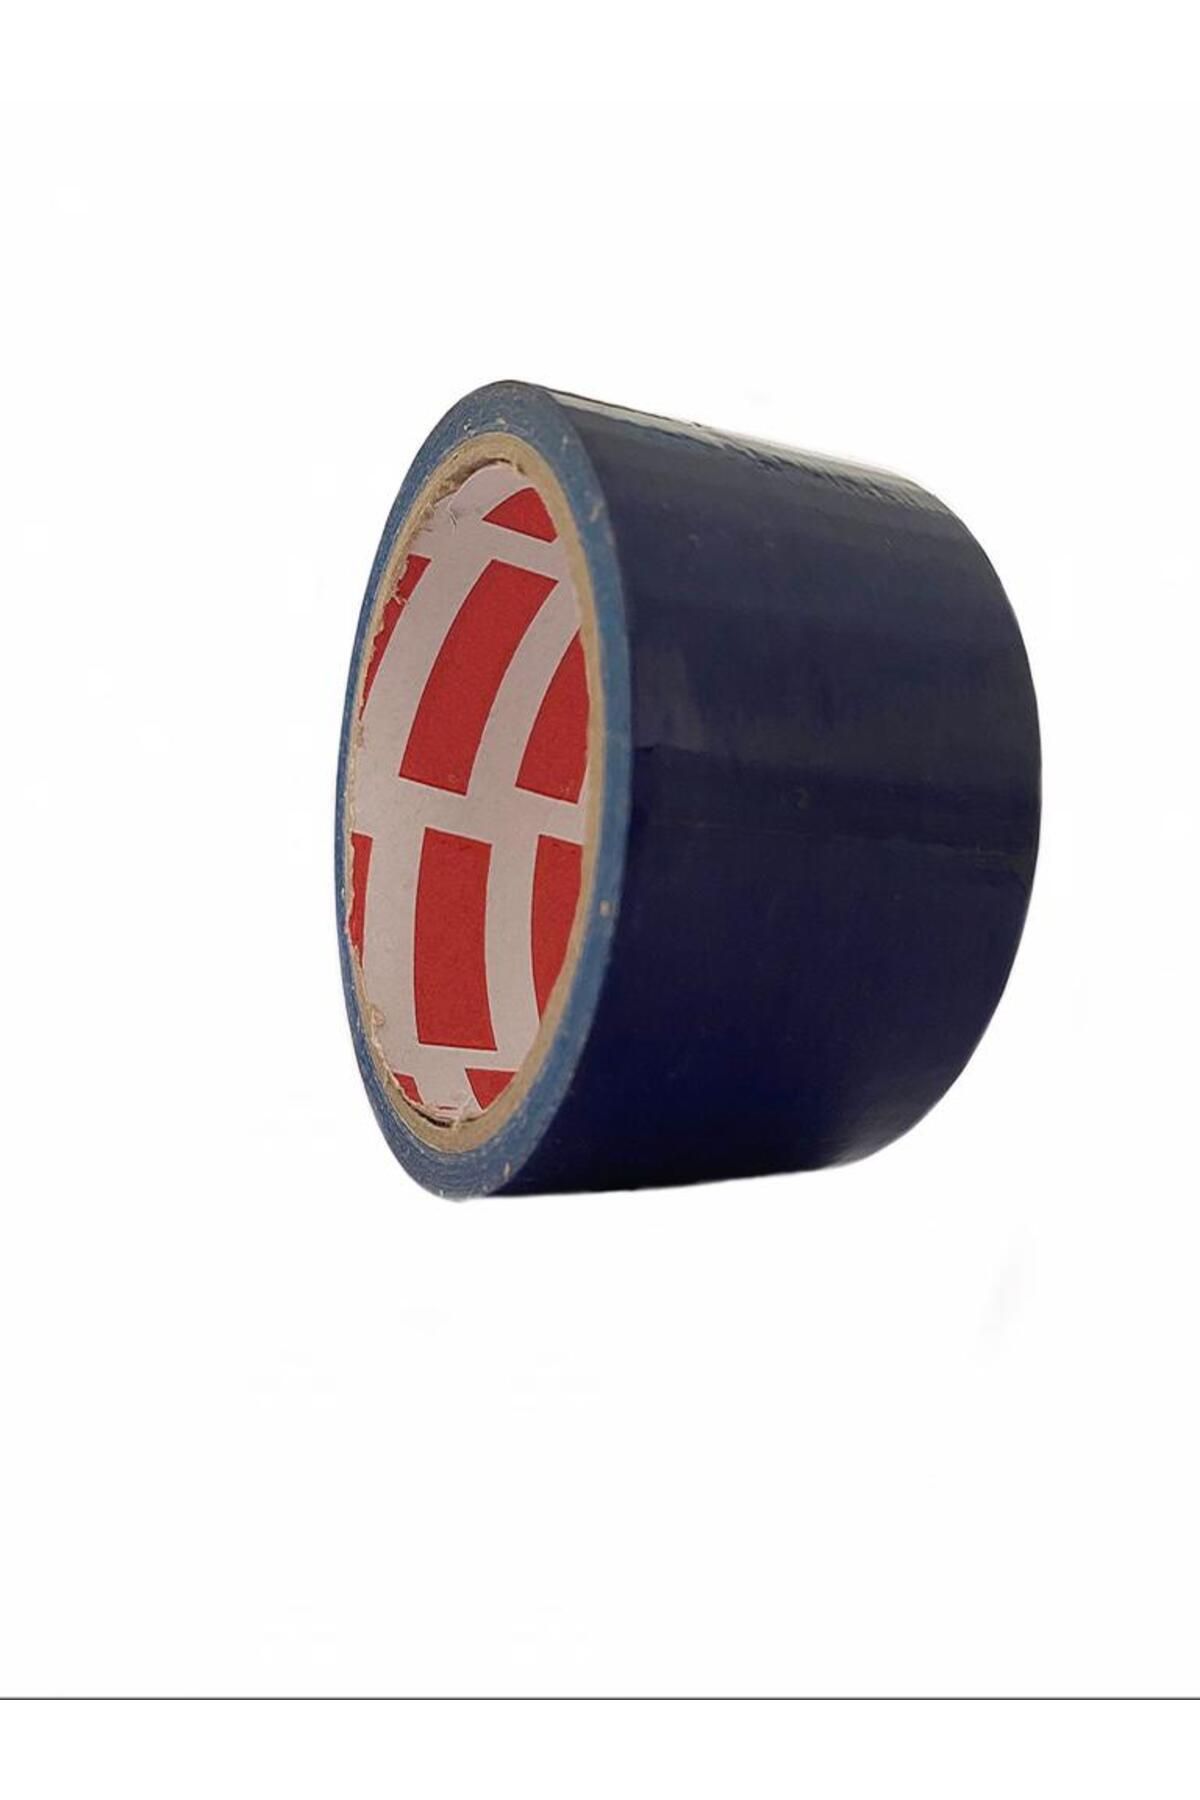 Genel Markalar Suya Dayanıklı Tamir Bandı - Mavi 10mt Flex Tape (4434)